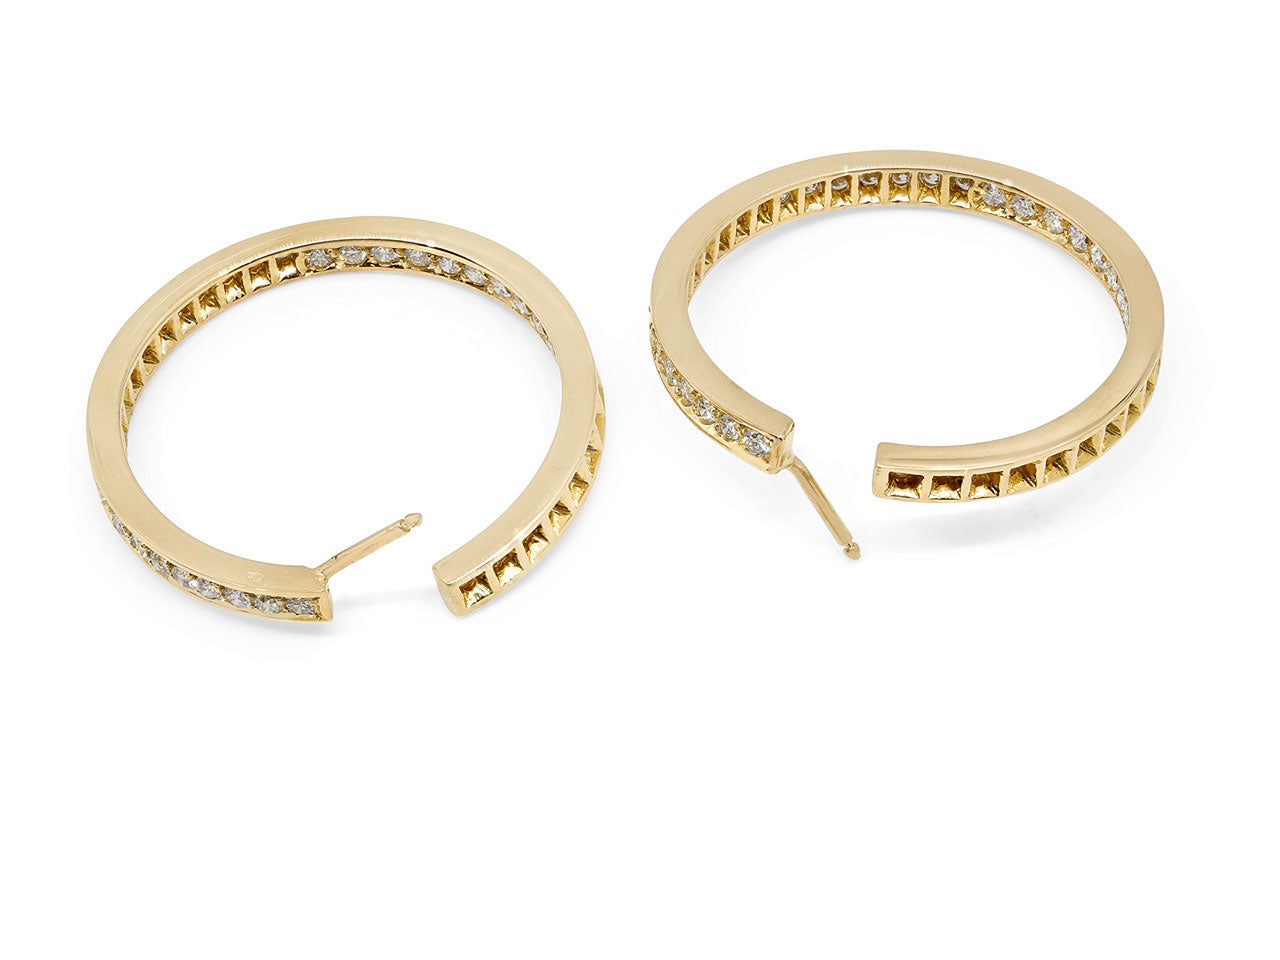 Diamond Hoop Earrings in 18K Gold, French